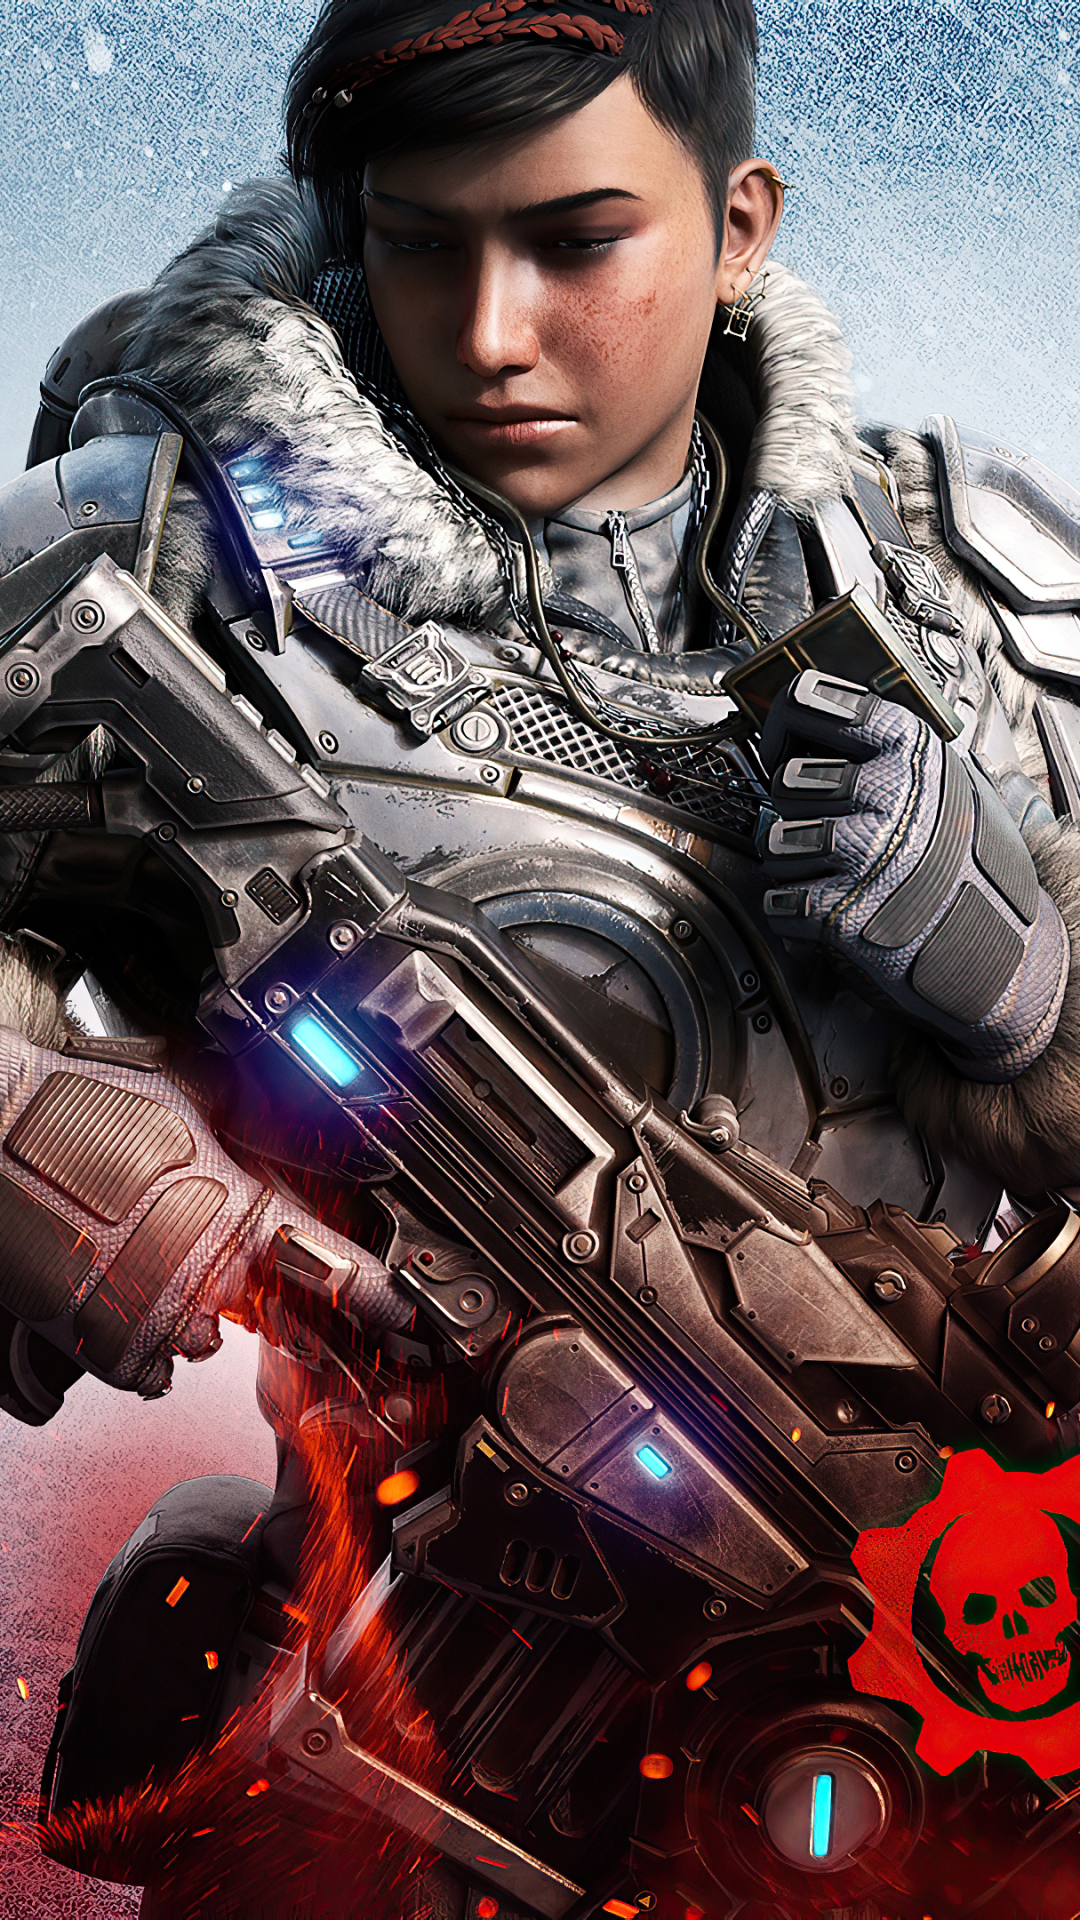 Descarga gratuita de fondo de pantalla para móvil de Gears Of War, Videojuego, Engranajes De Guerra, Gears 5.